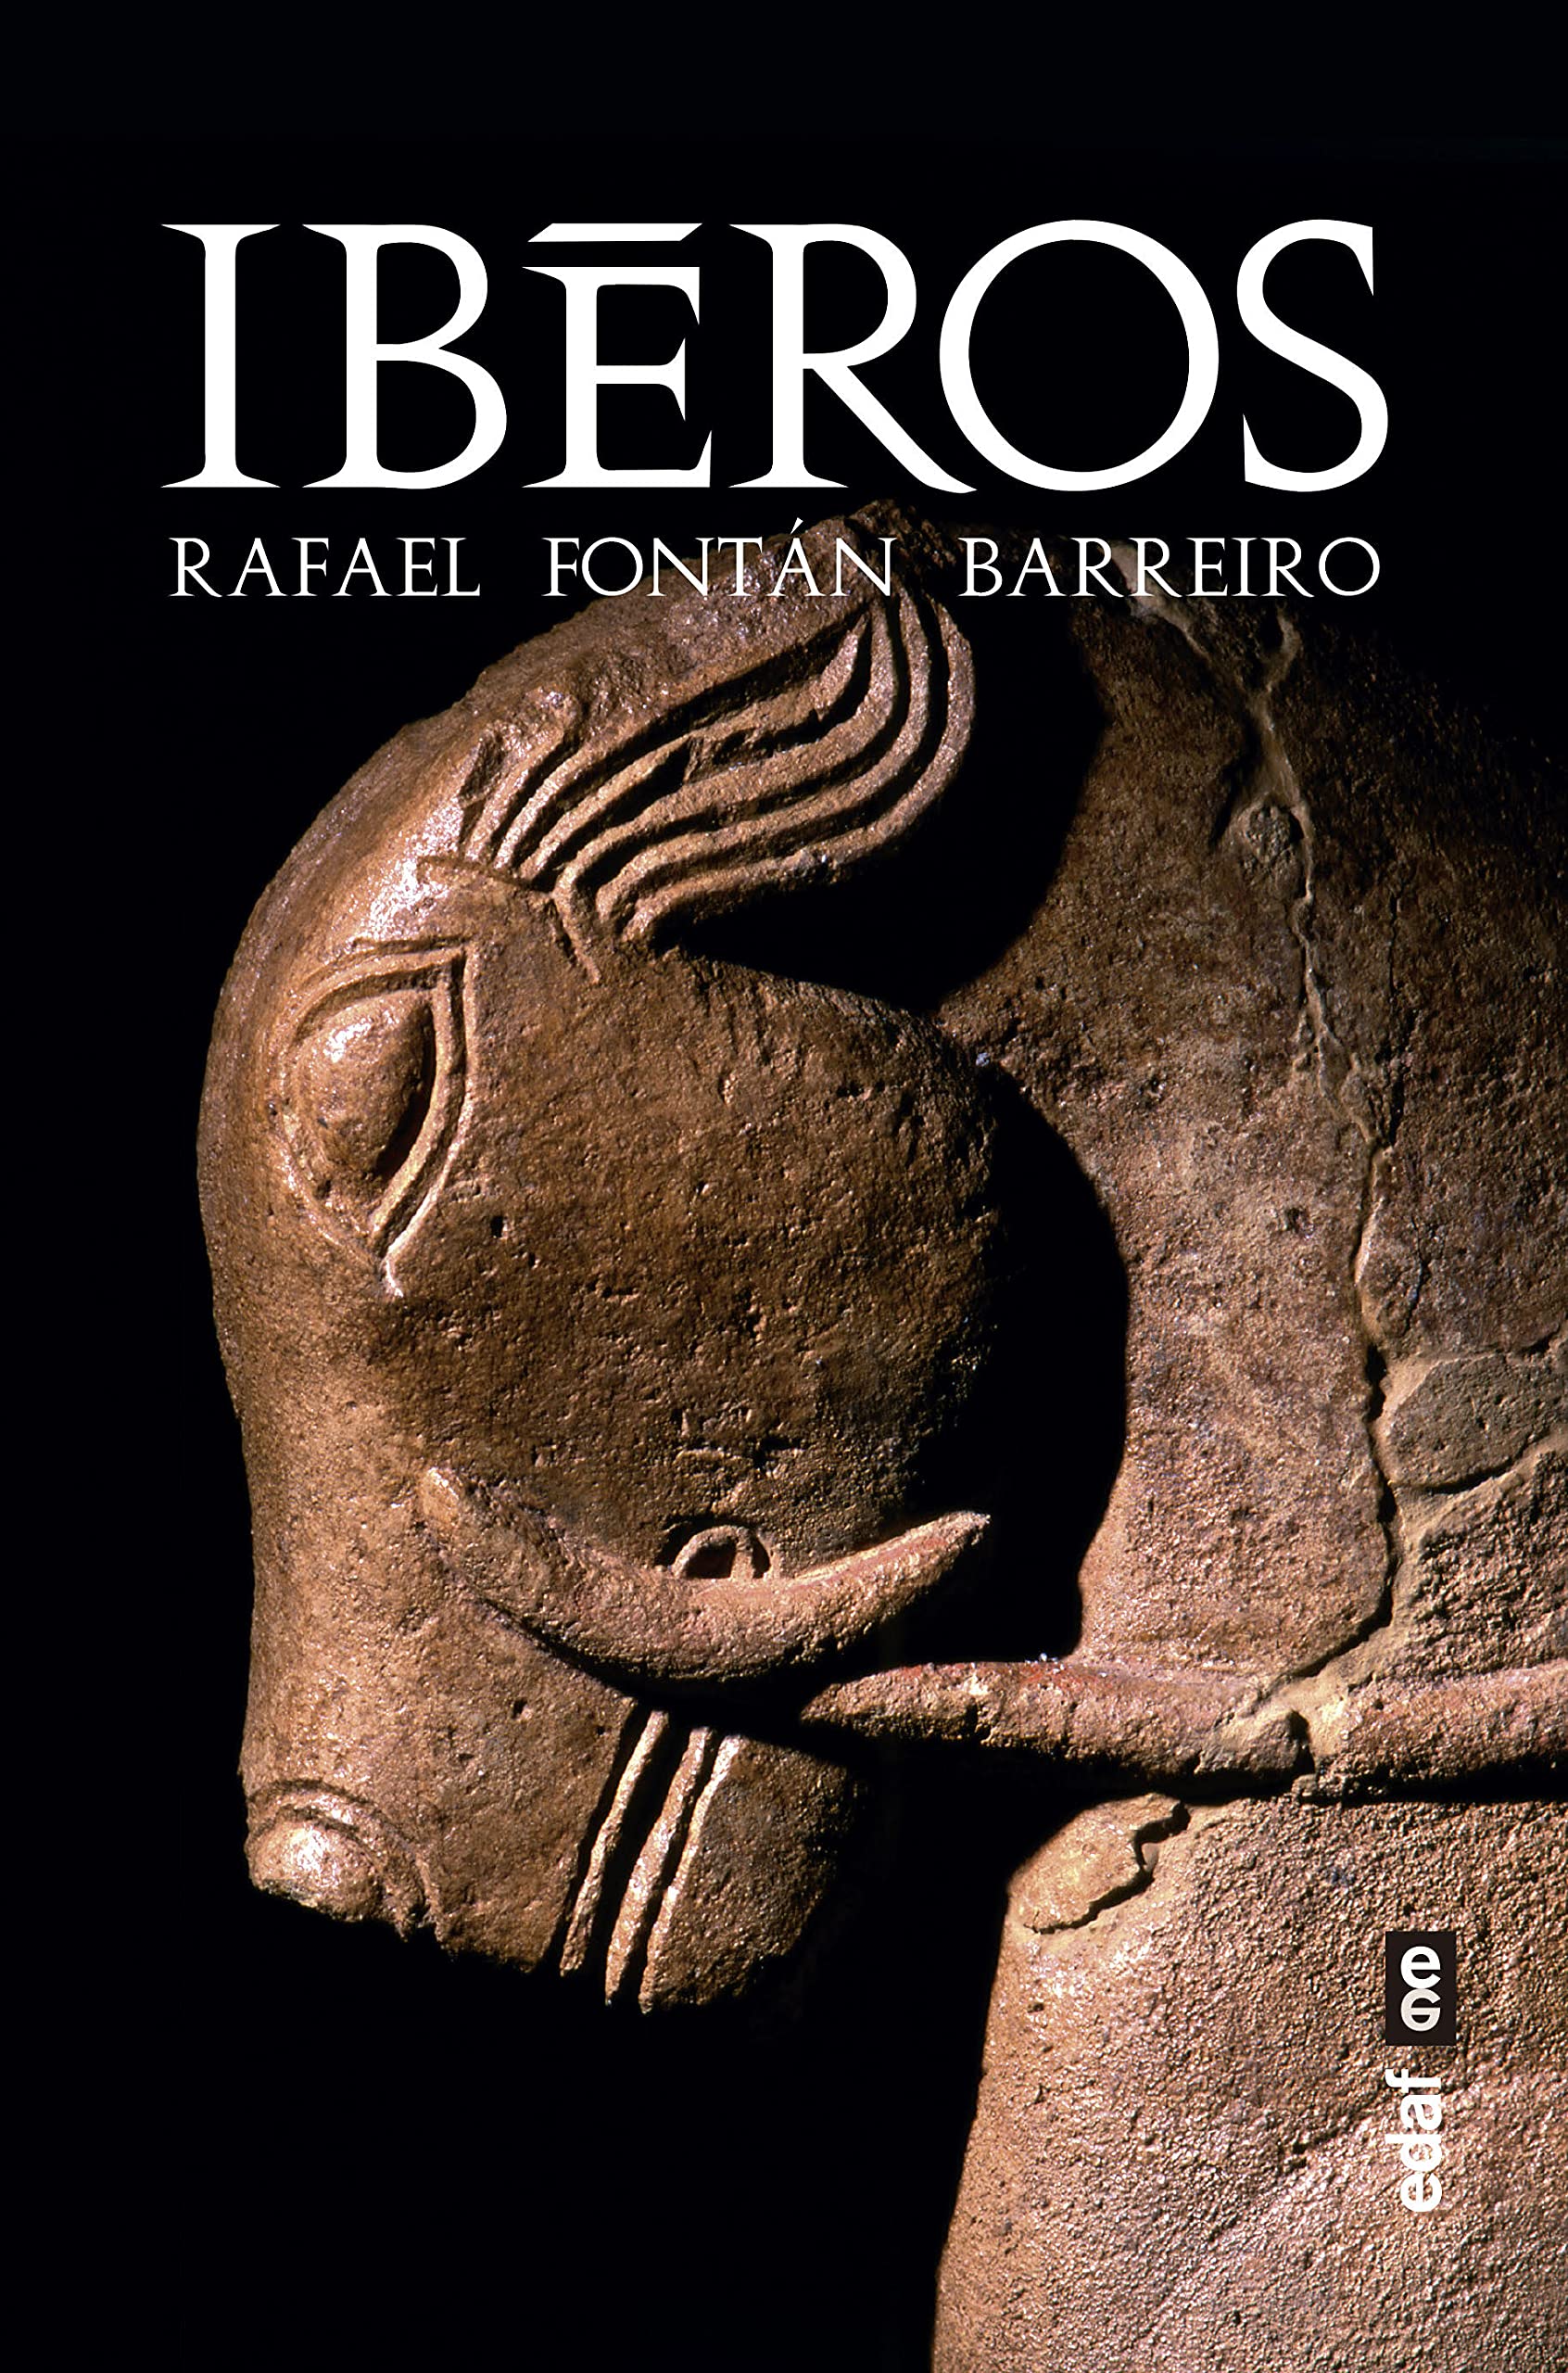 Presentación del libro Iberos por el autor, Rafael Fontán Barreiro